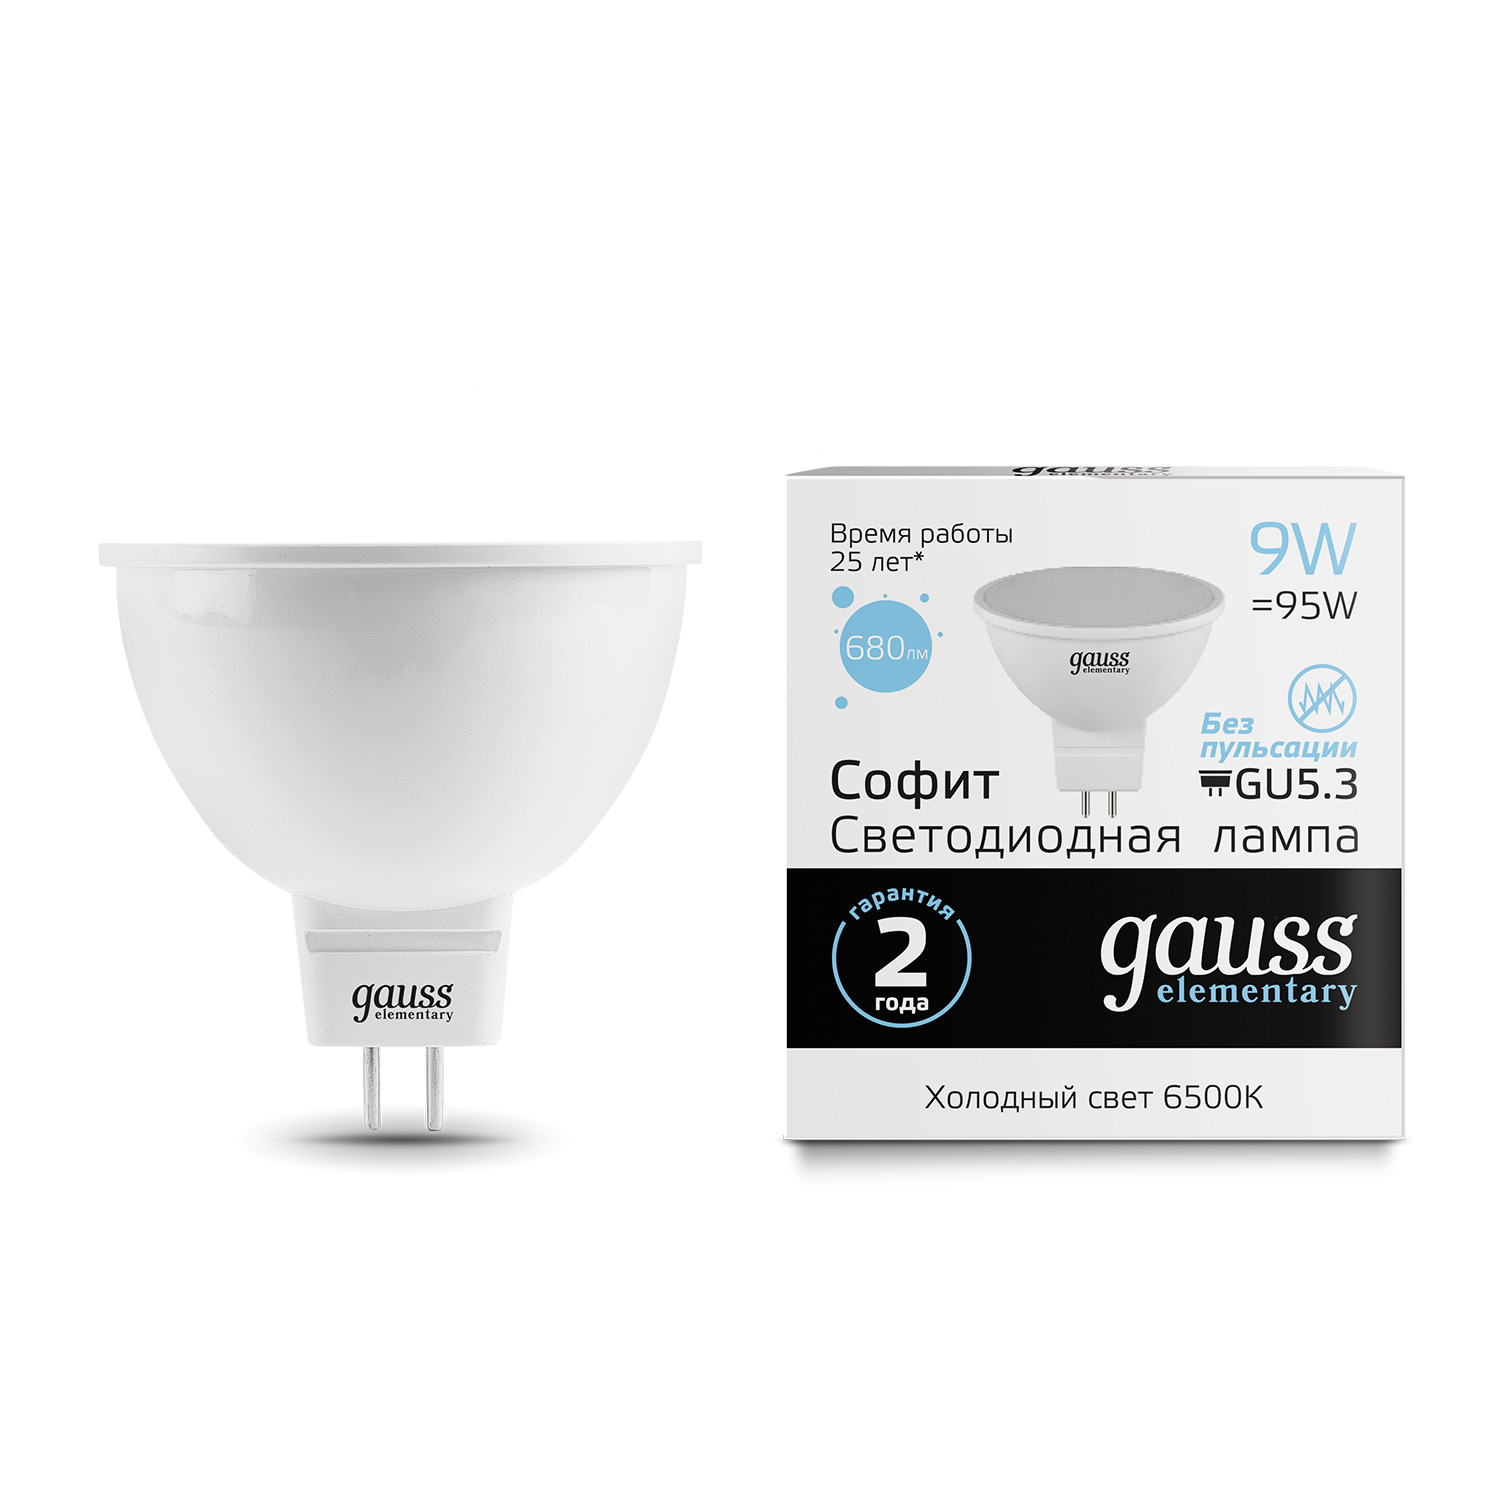 Лампа Gauss LED Elementary MR16 GU5.3 9W 6500K gauss led elementary mr16 gu5 3 9w 6500k 1 10 100